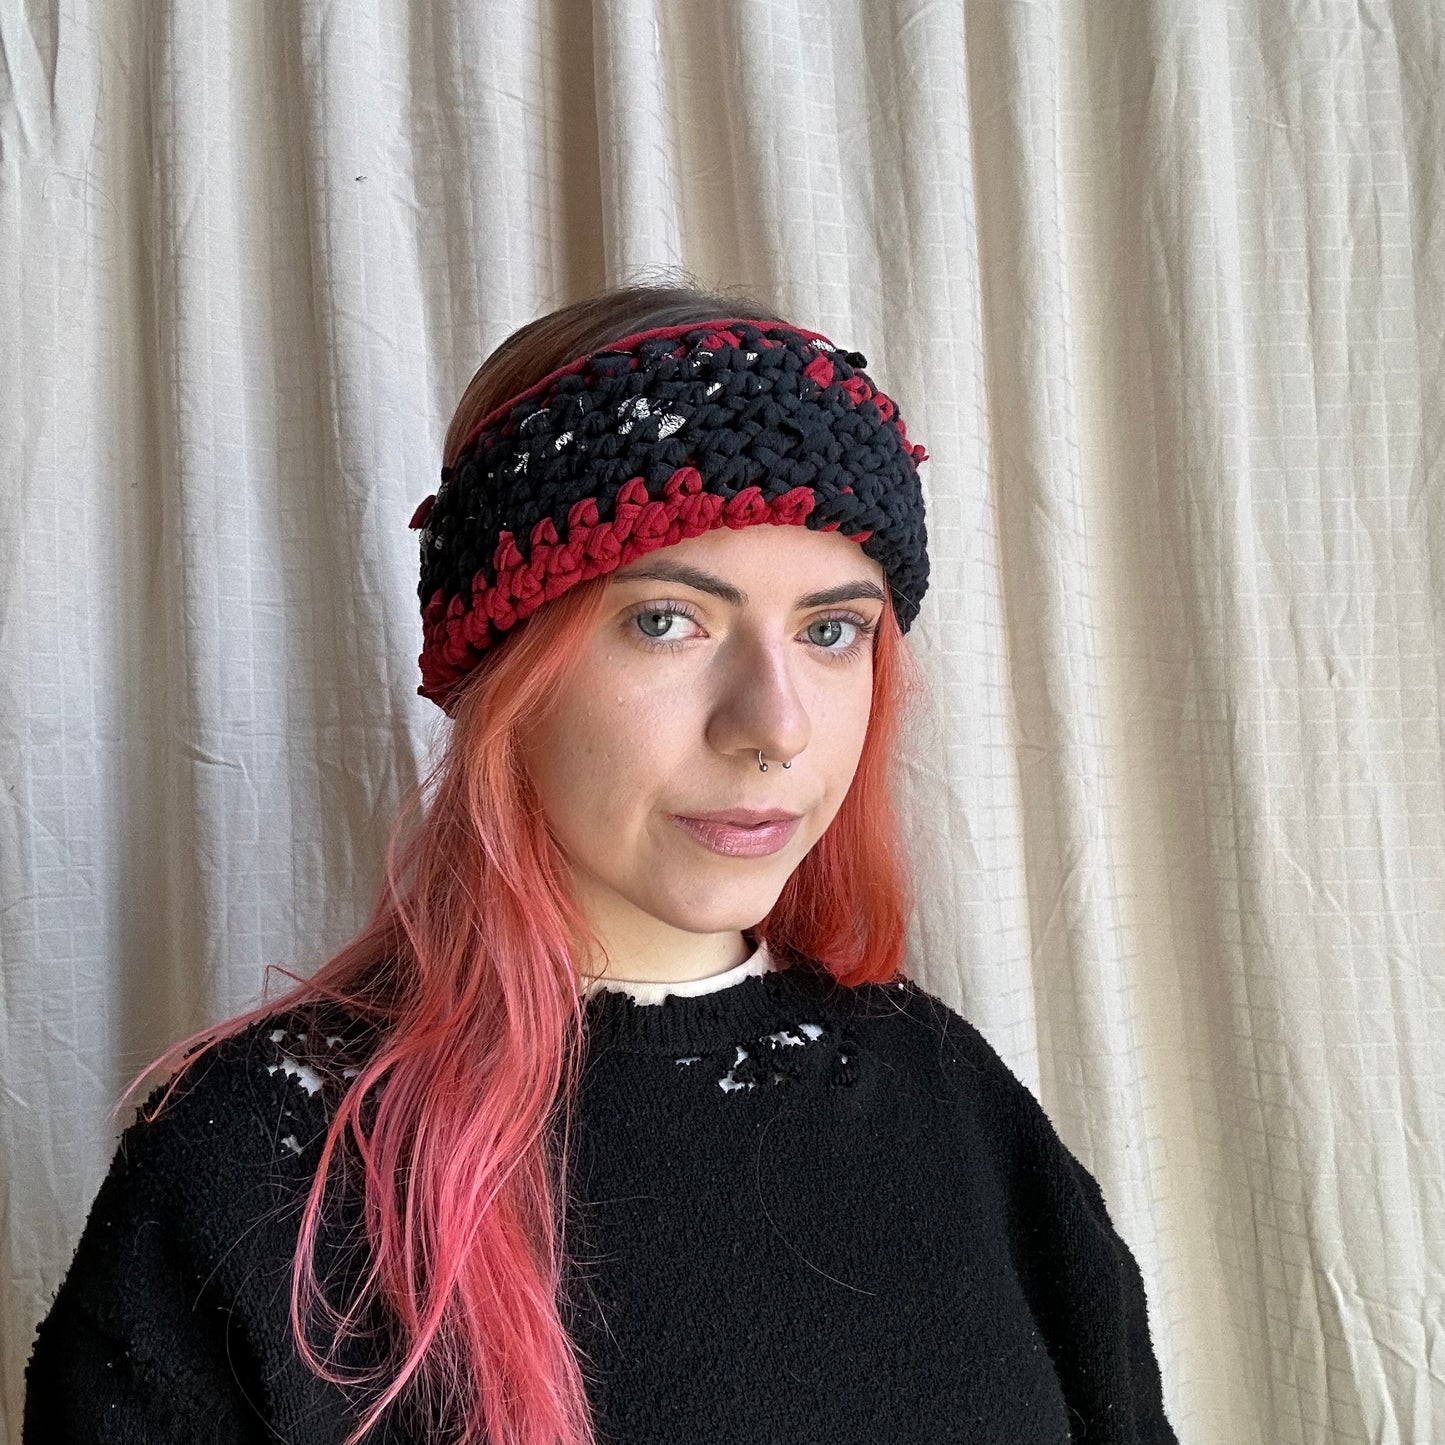 Red/Black Crochet Winter Headband